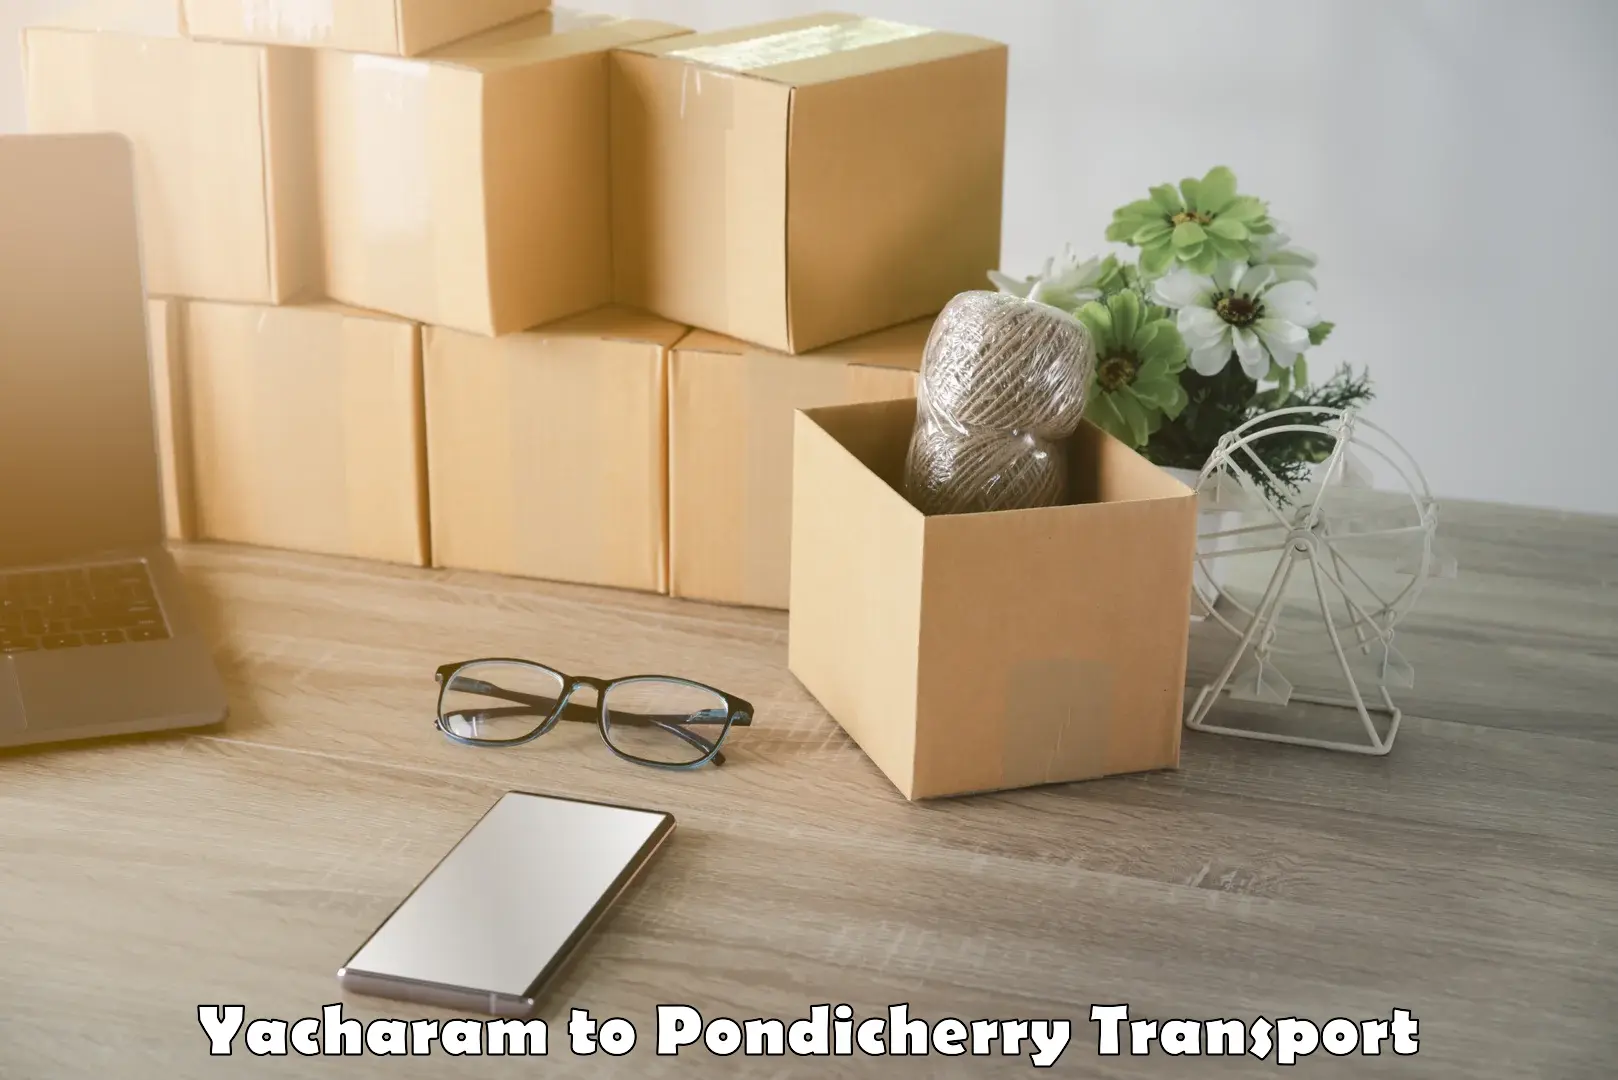 Cargo transportation services Yacharam to Pondicherry University